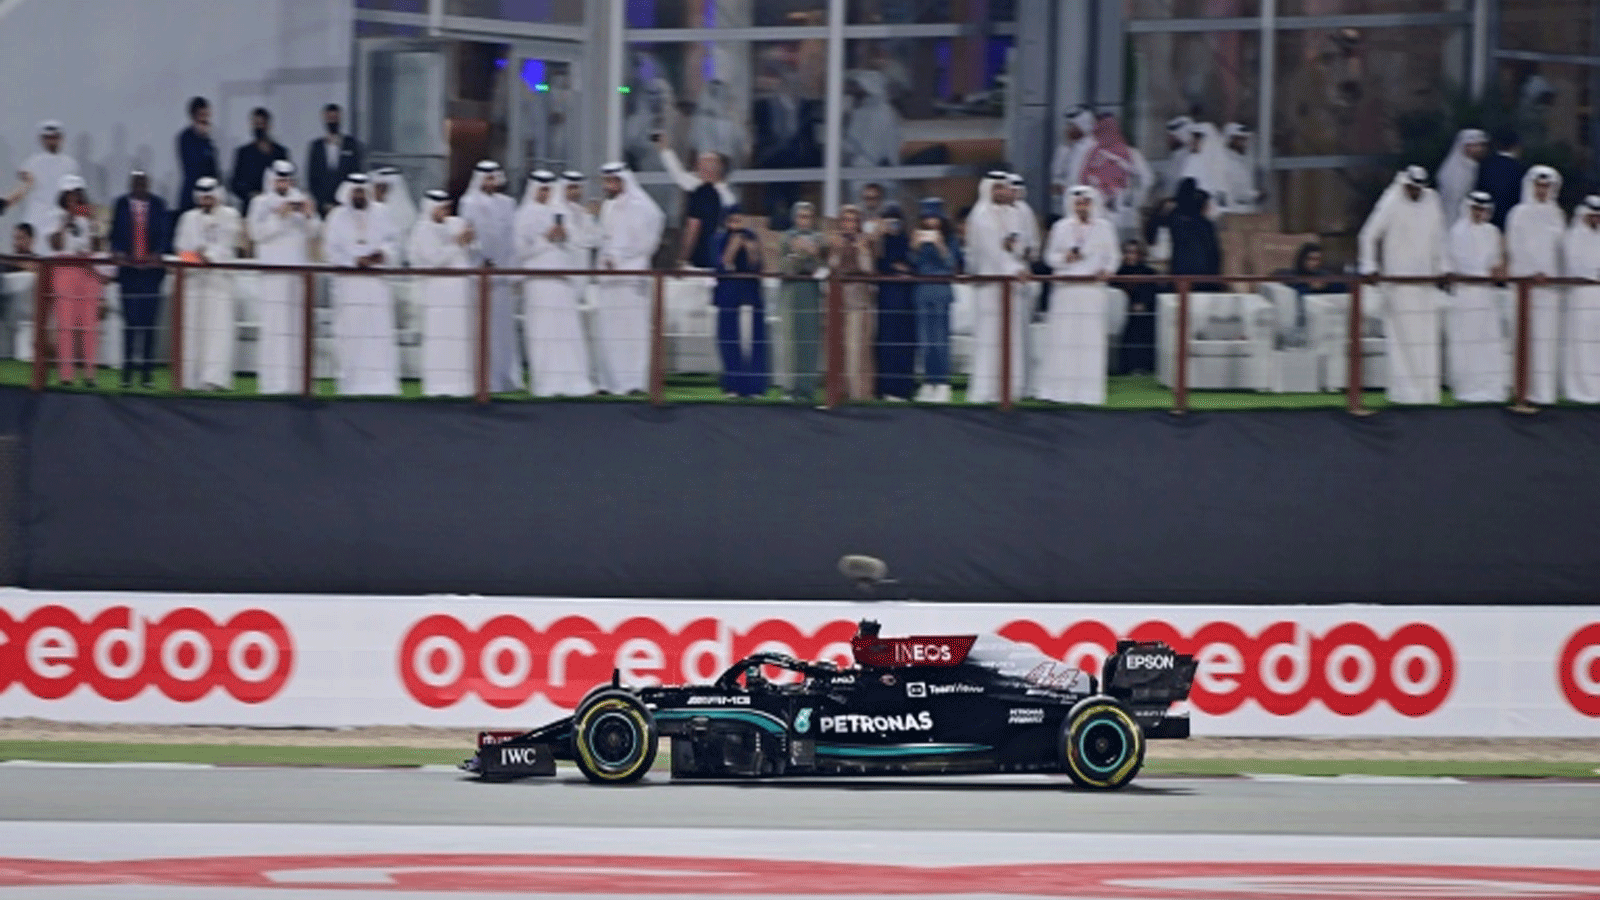 سائق مرسيدس البريطاني لويس هاميلتون يفوز بالنسخة الاولى من جائزة قطر الكبرى على حلبة لوسيل الدولية في 21 تشرين الثاني/نوفمبر 2021